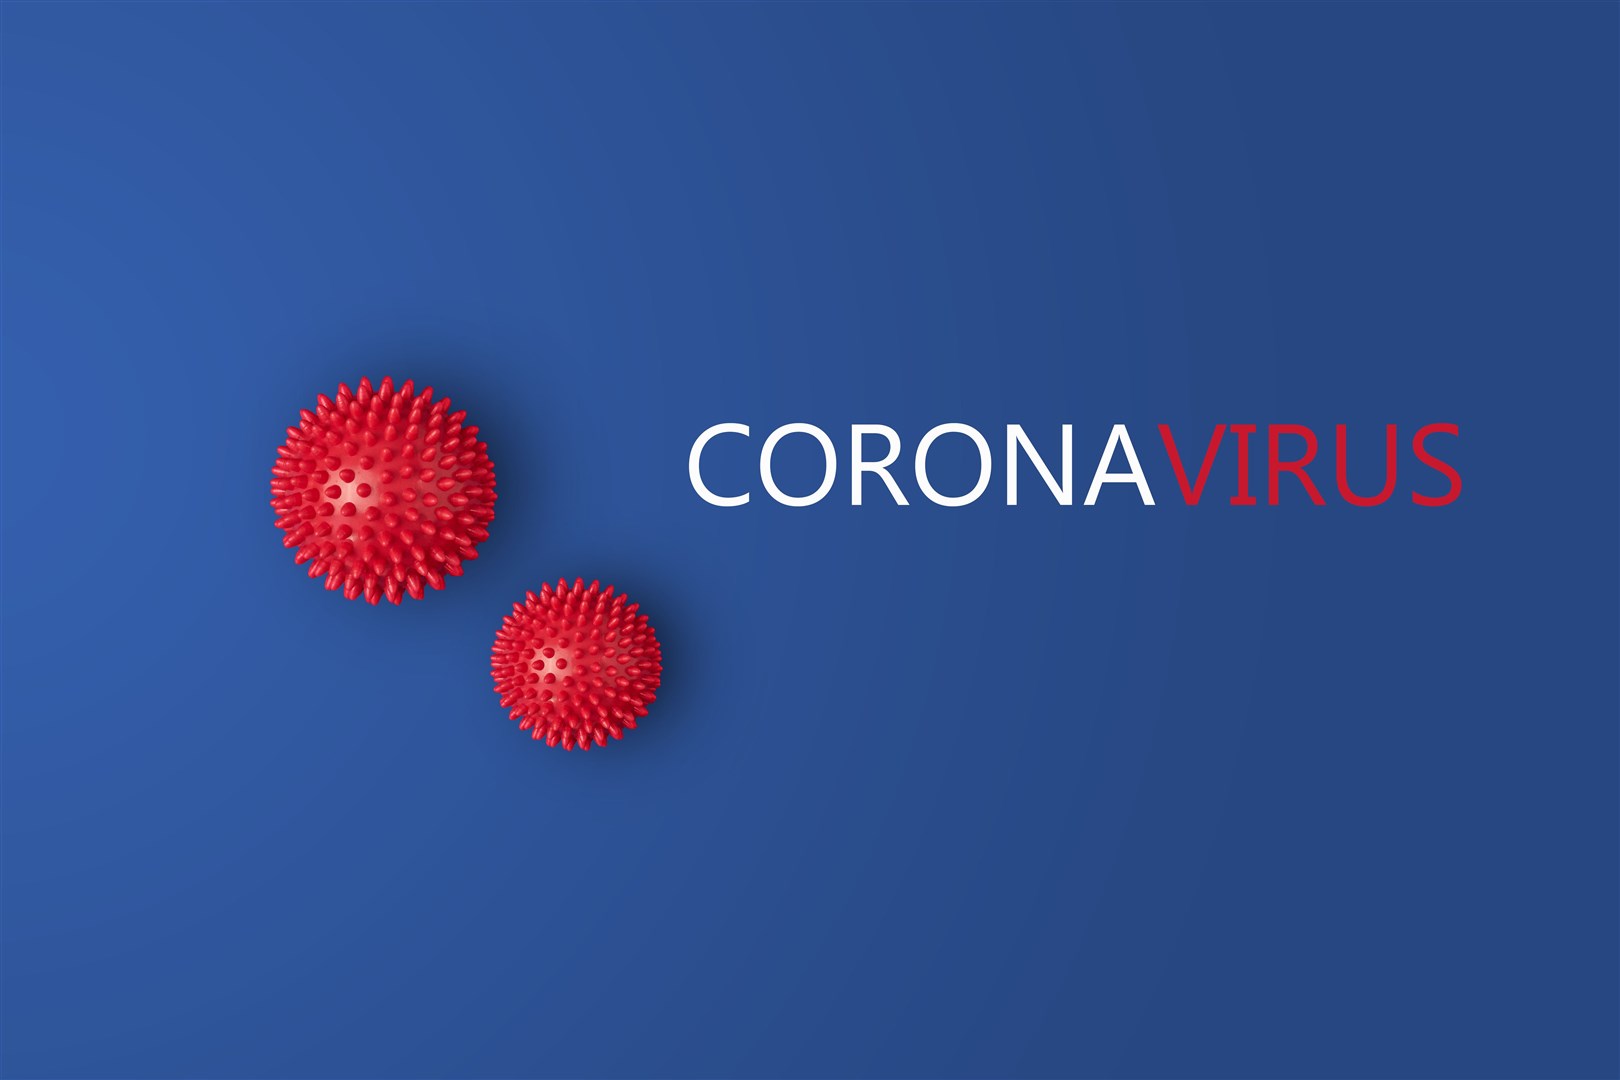 Coronavirus news.